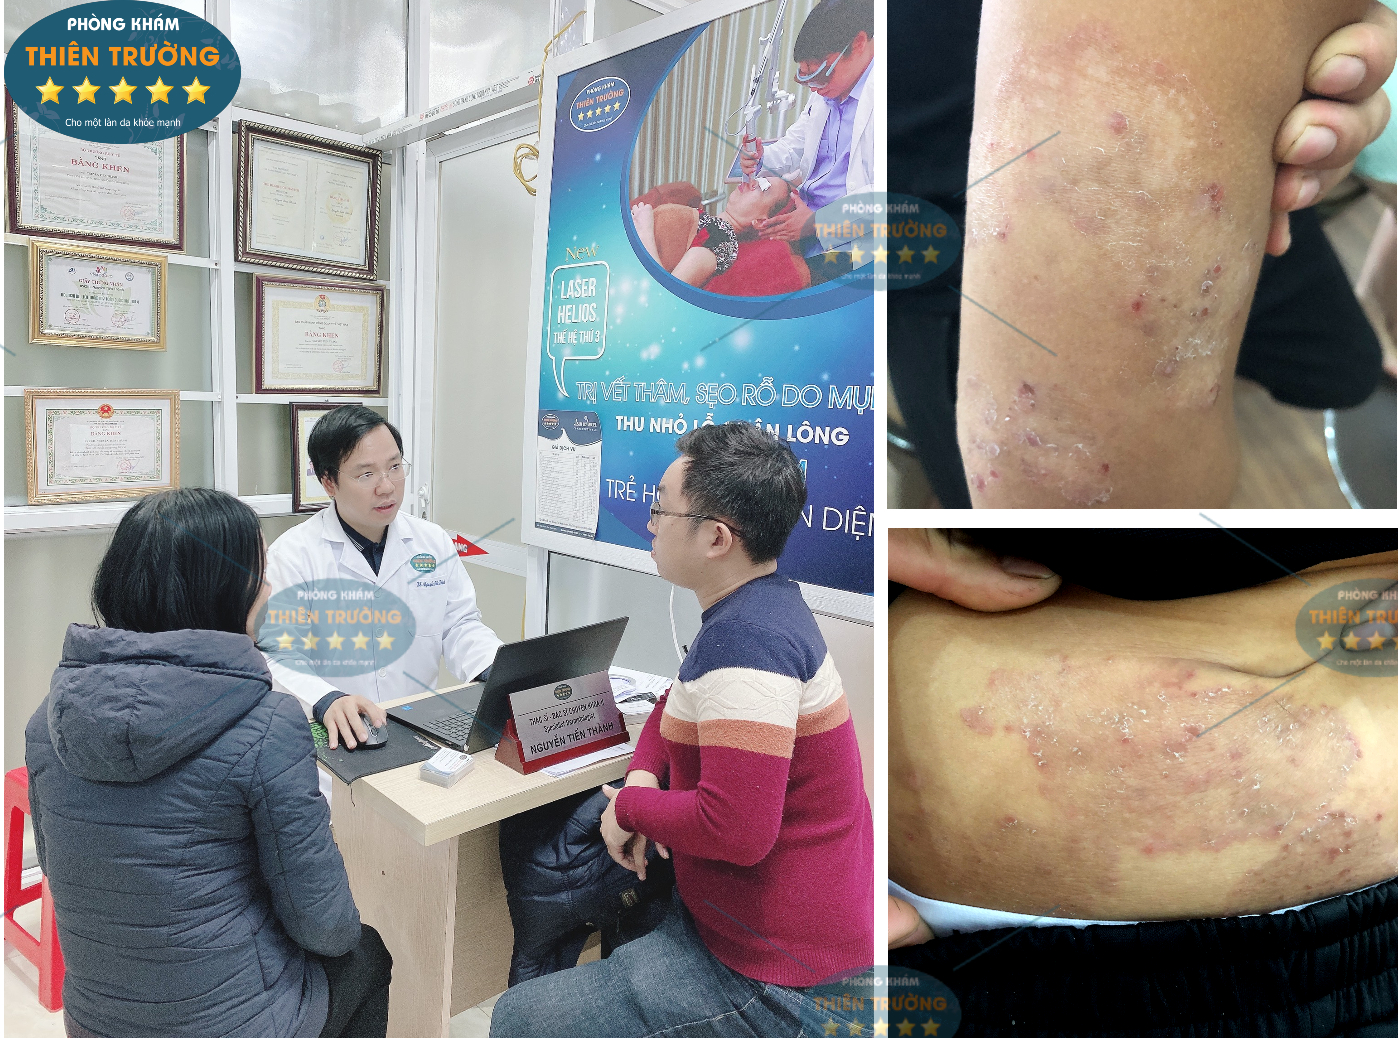 Hình ảnh: Thạc sĩ- Bác sĩ CK II Nguyễn Tiến Thành đang khám cho khách hàng tại Phòng khám Da liễu thẩm mỹ Thiên Trường.